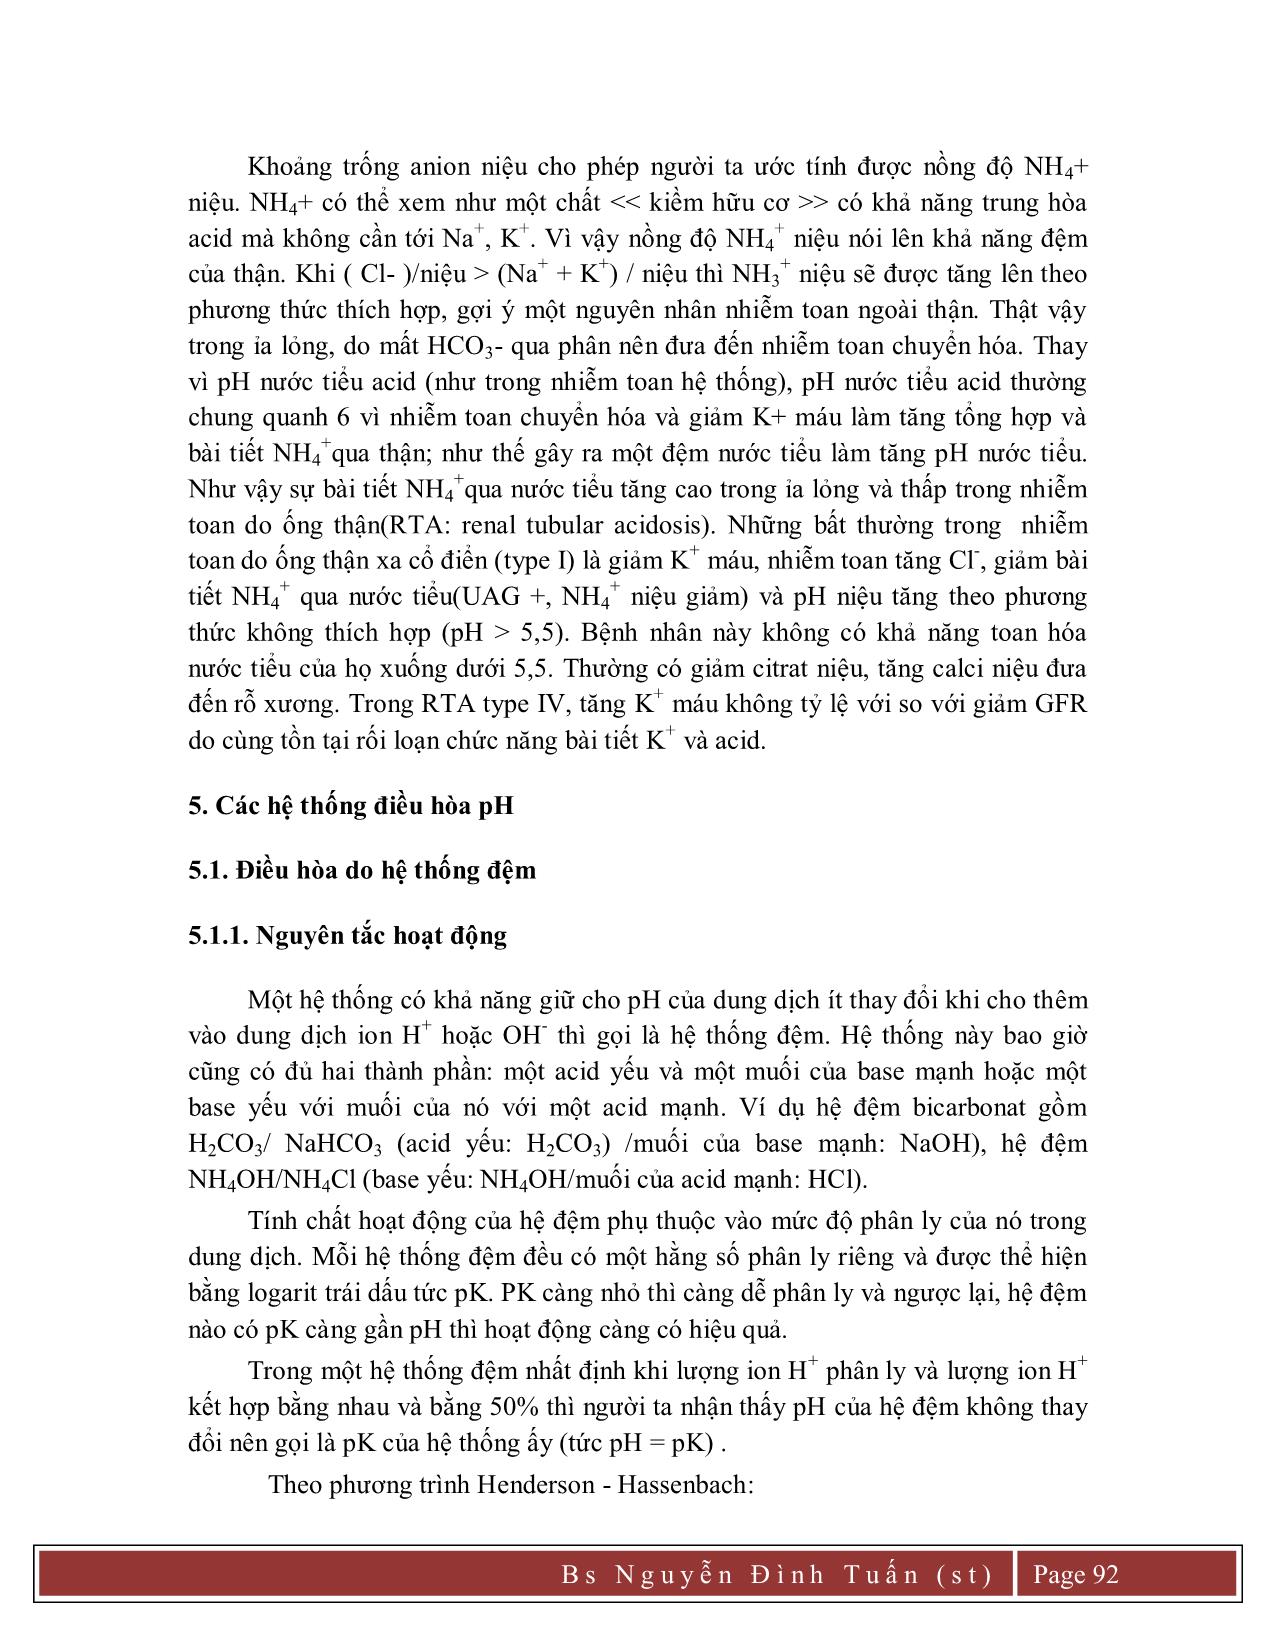 Giáo trình Sinh lý bệnh (Phần 2) trang 4